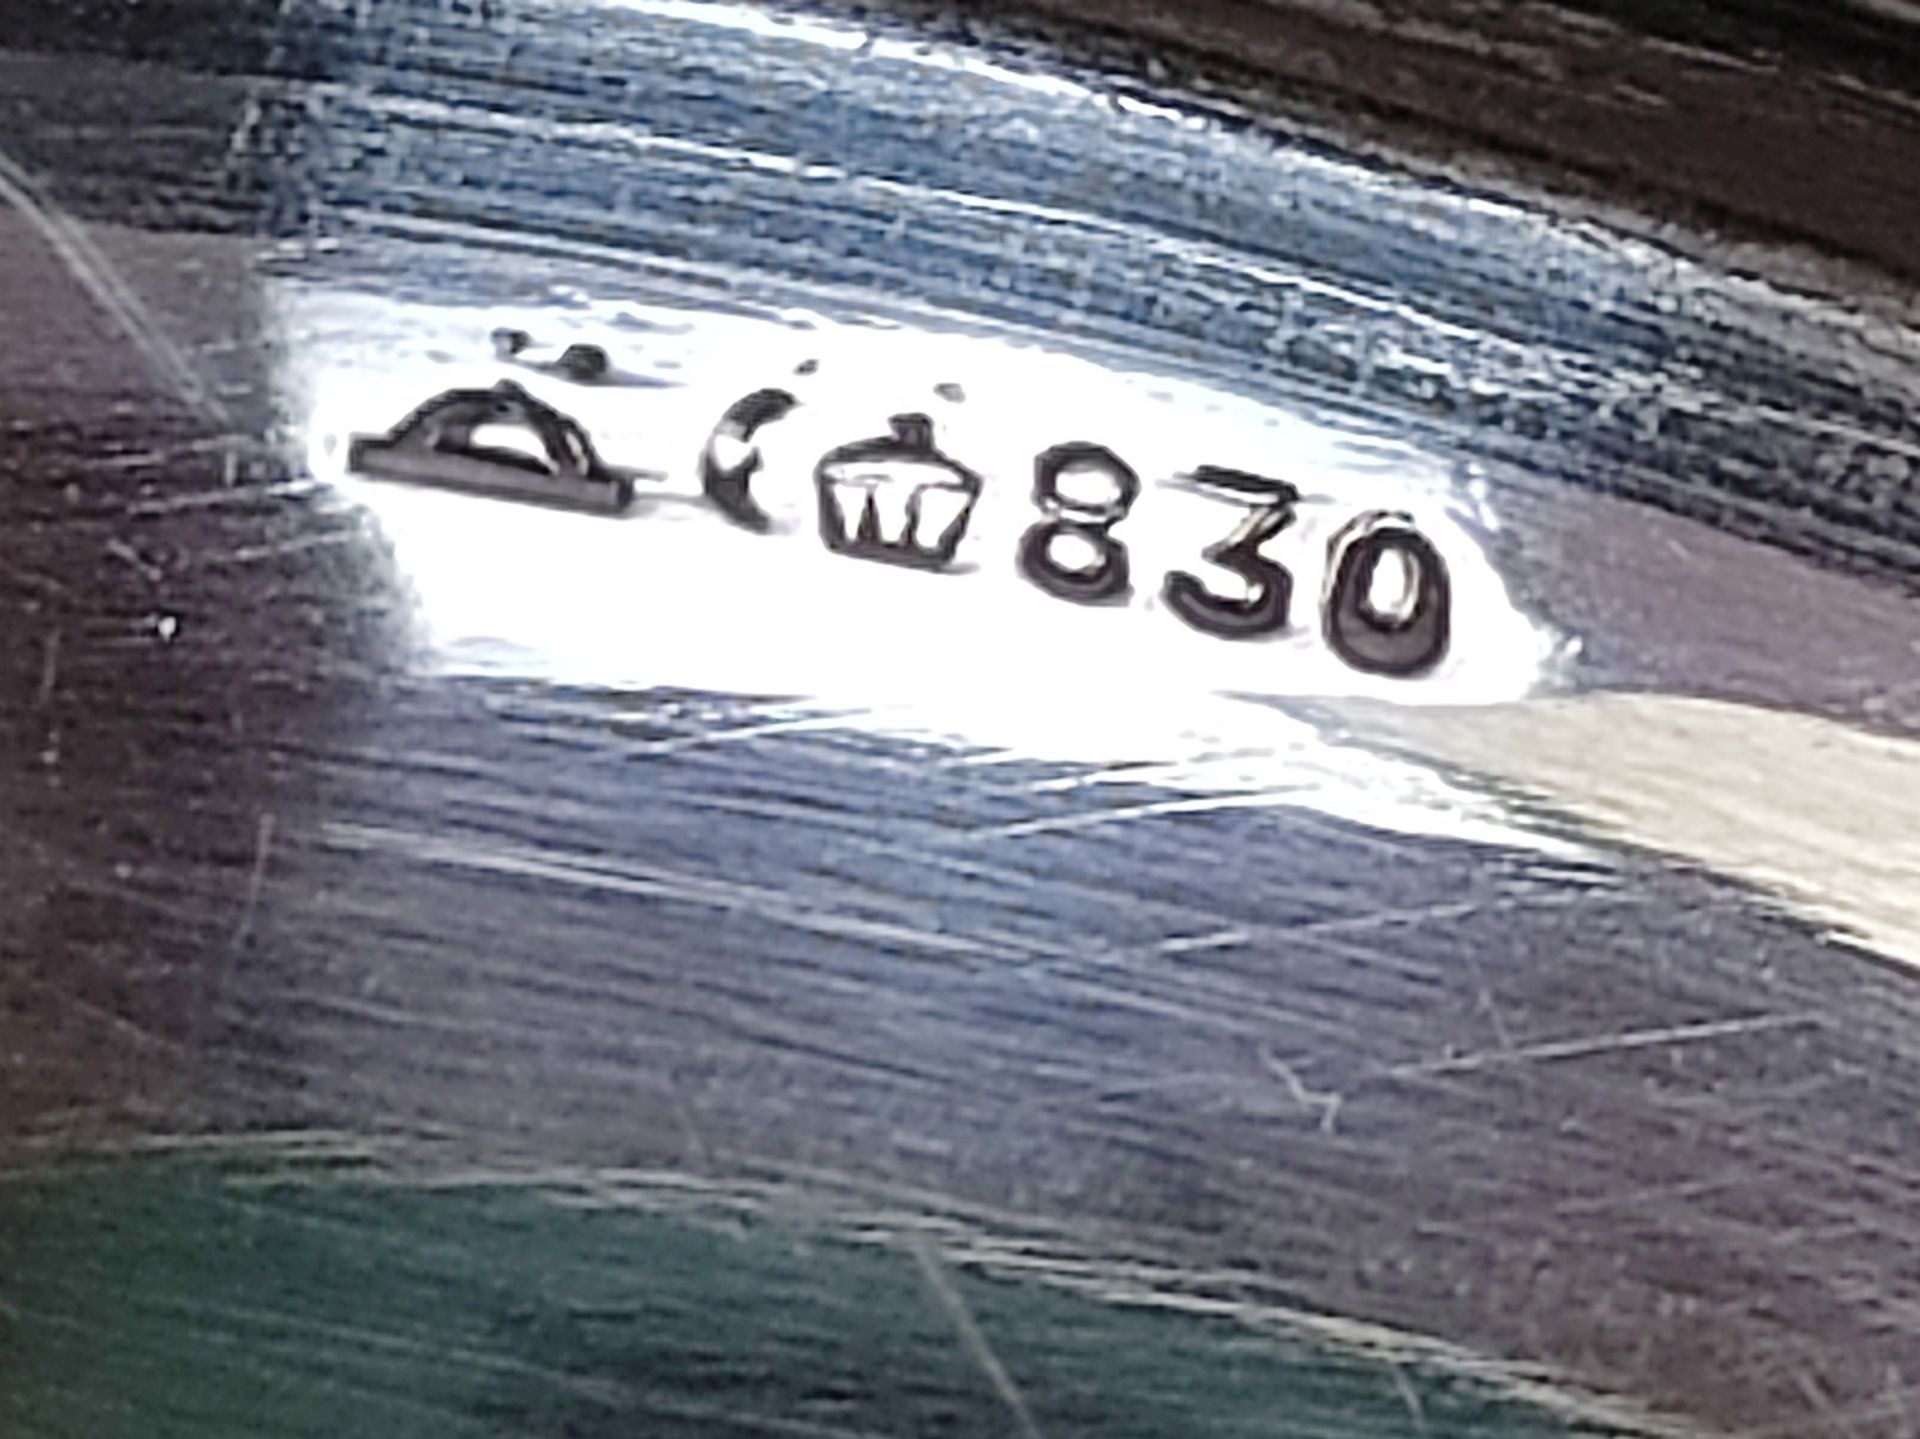 Ovales Tablett, Silber 830 (punziert), 500g, Herstellermarke "Wilkens", geschwungene getreppte Ränd - Bild 3 aus 3